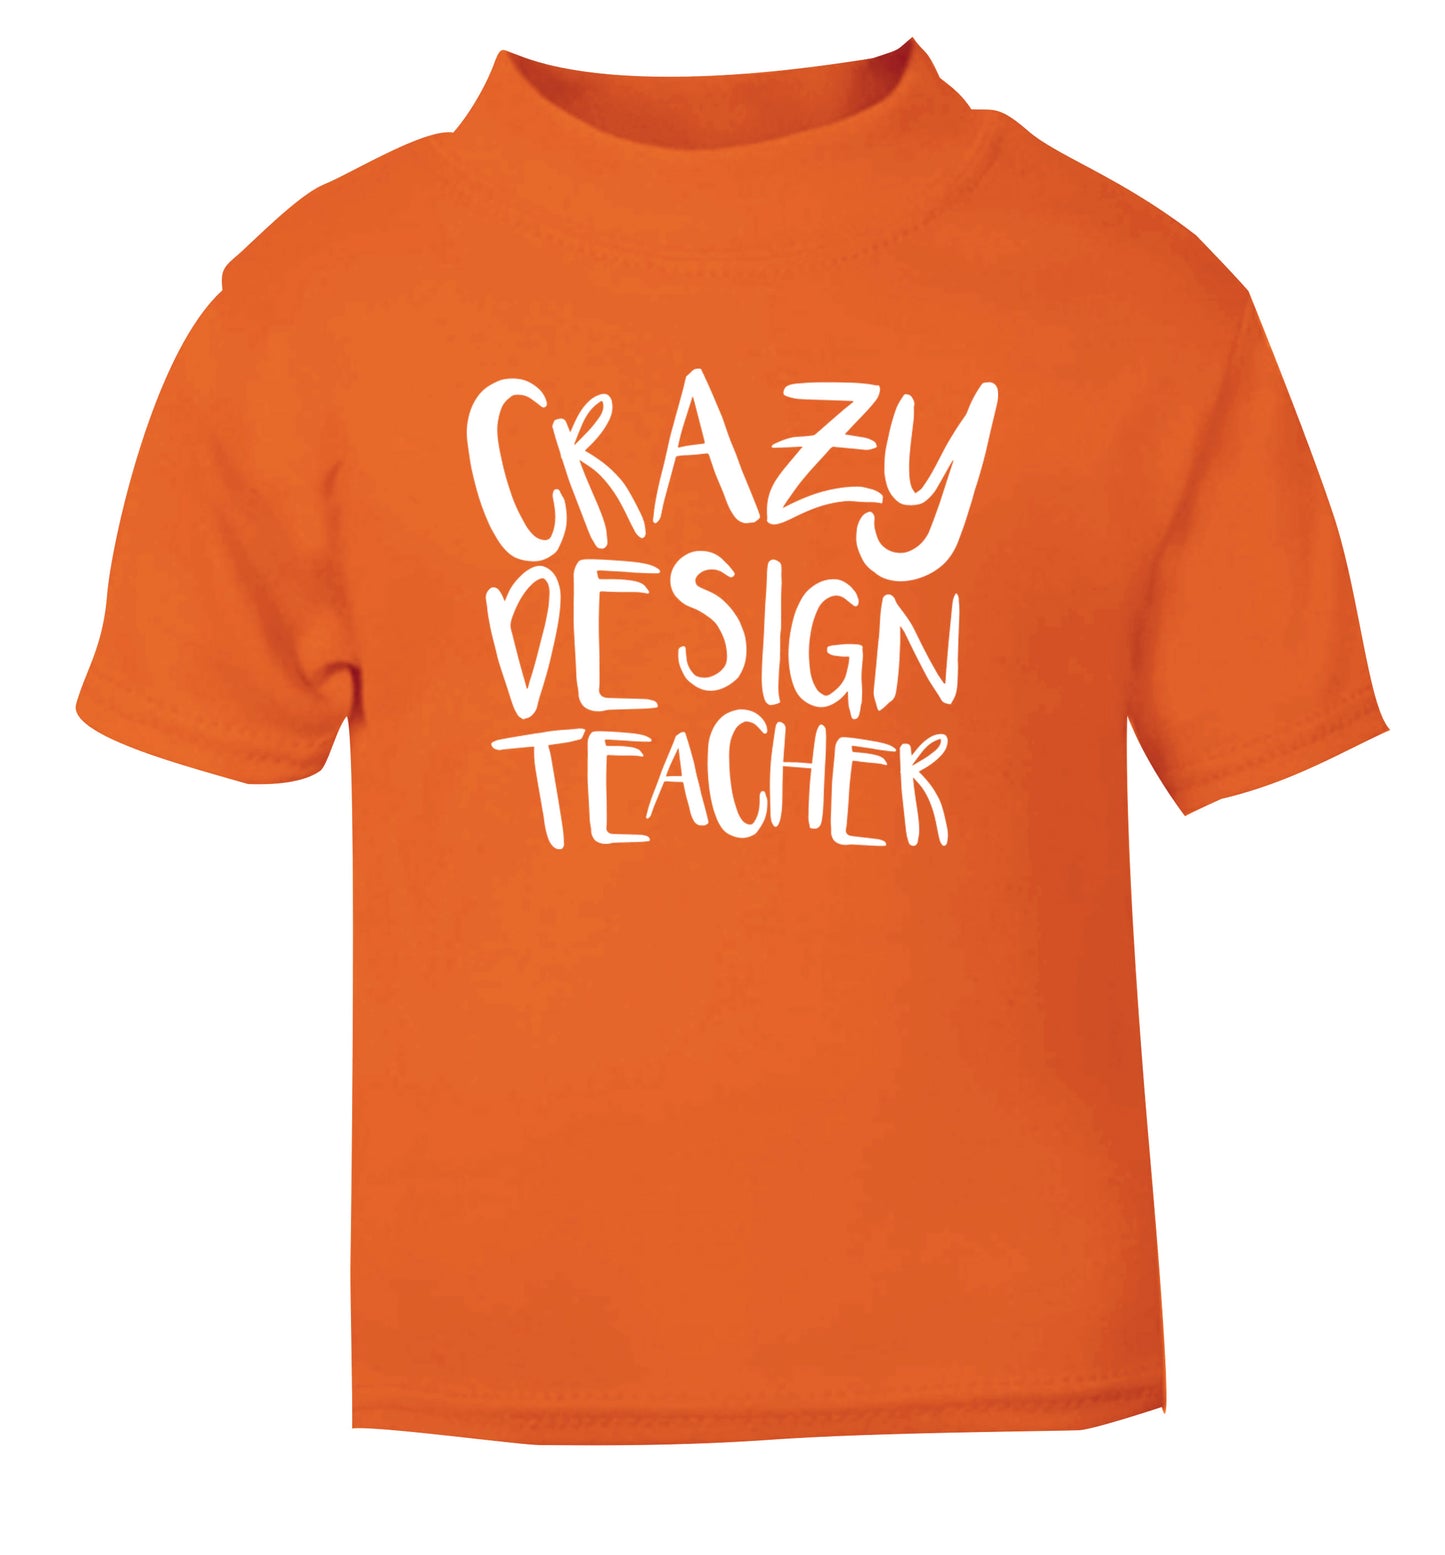 Crazy design teacher orange Baby Toddler Tshirt 2 Years